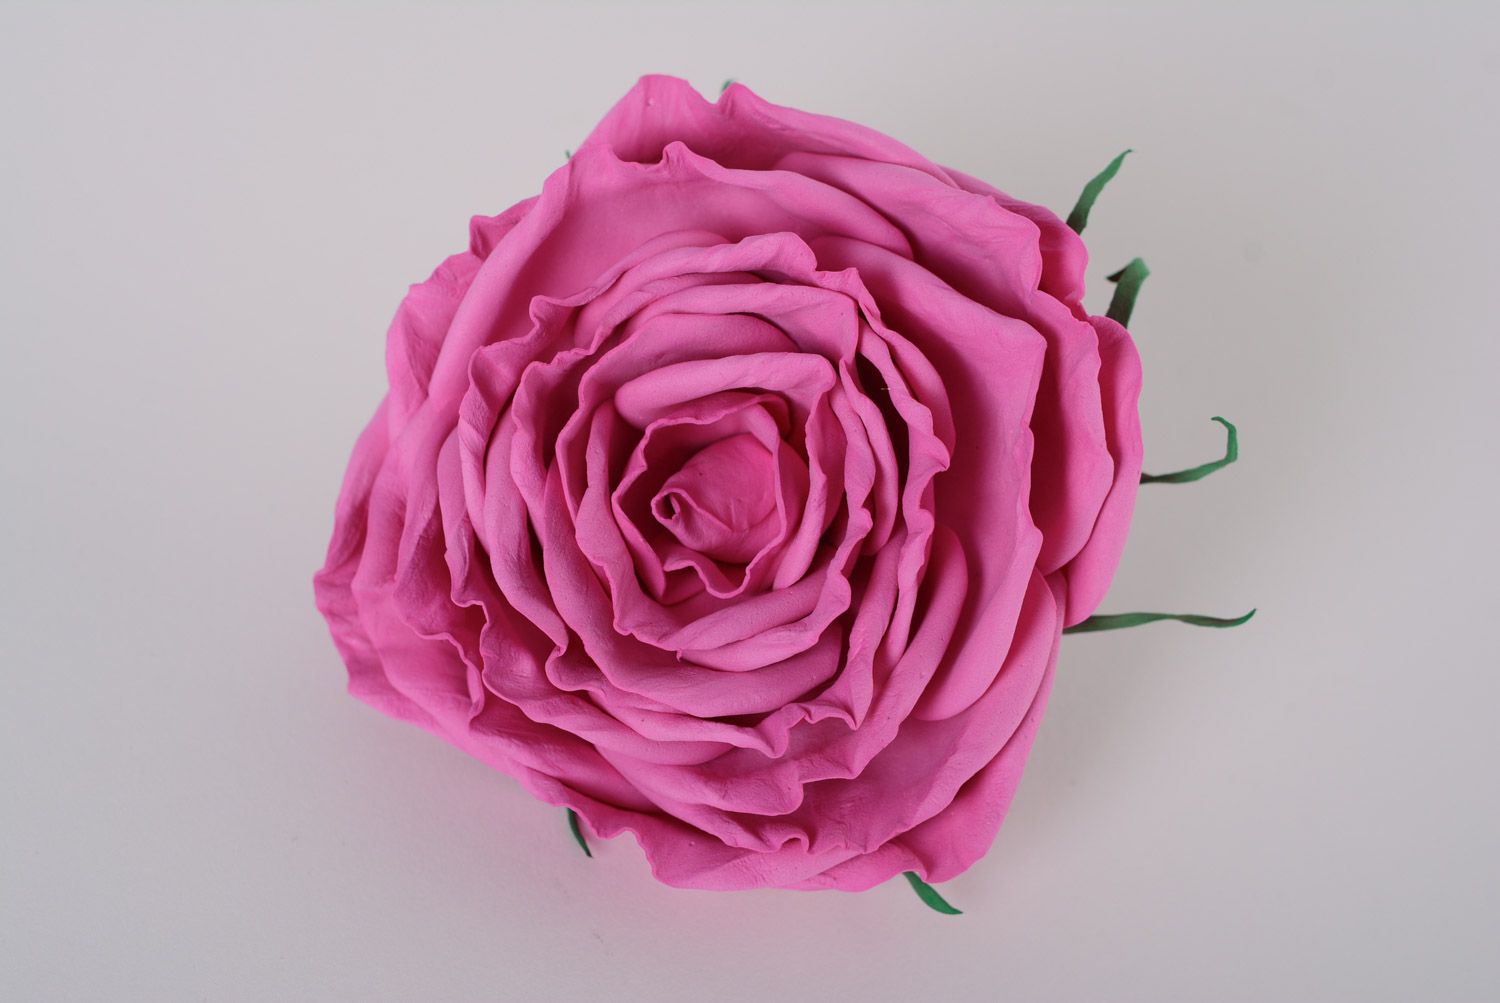 Резинка для волос из фоамирана в виде пышной розовой розы ручной работы фото 1